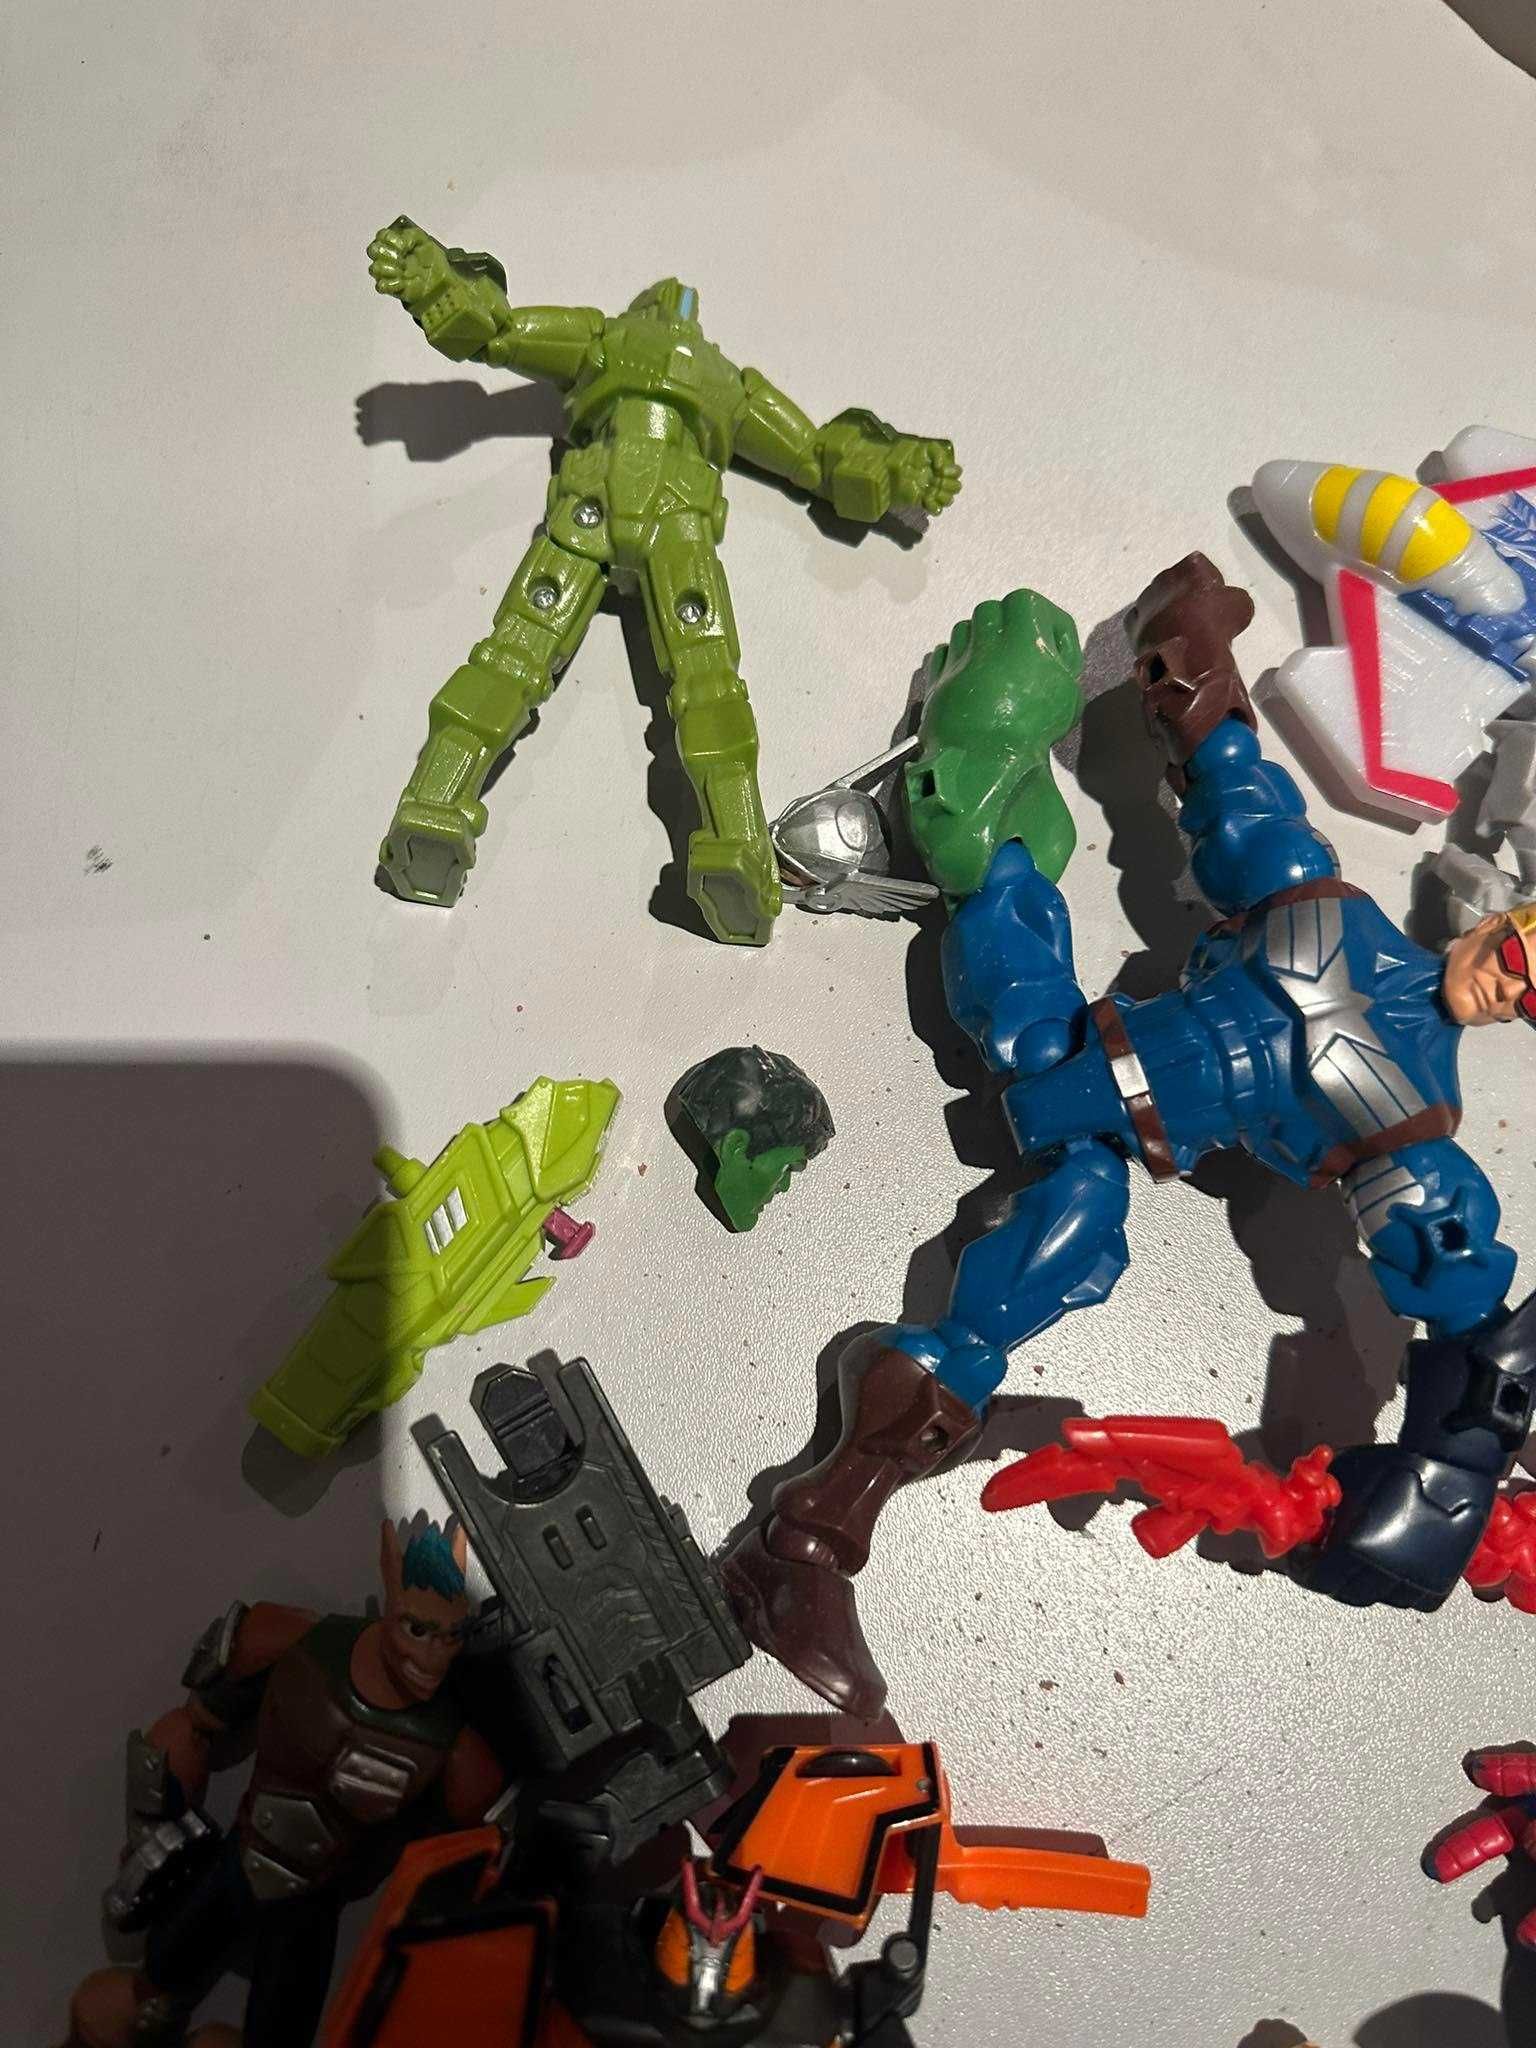 Zestaw różnych figurek akcji \ figurki zabawki Transformers Marvel itp